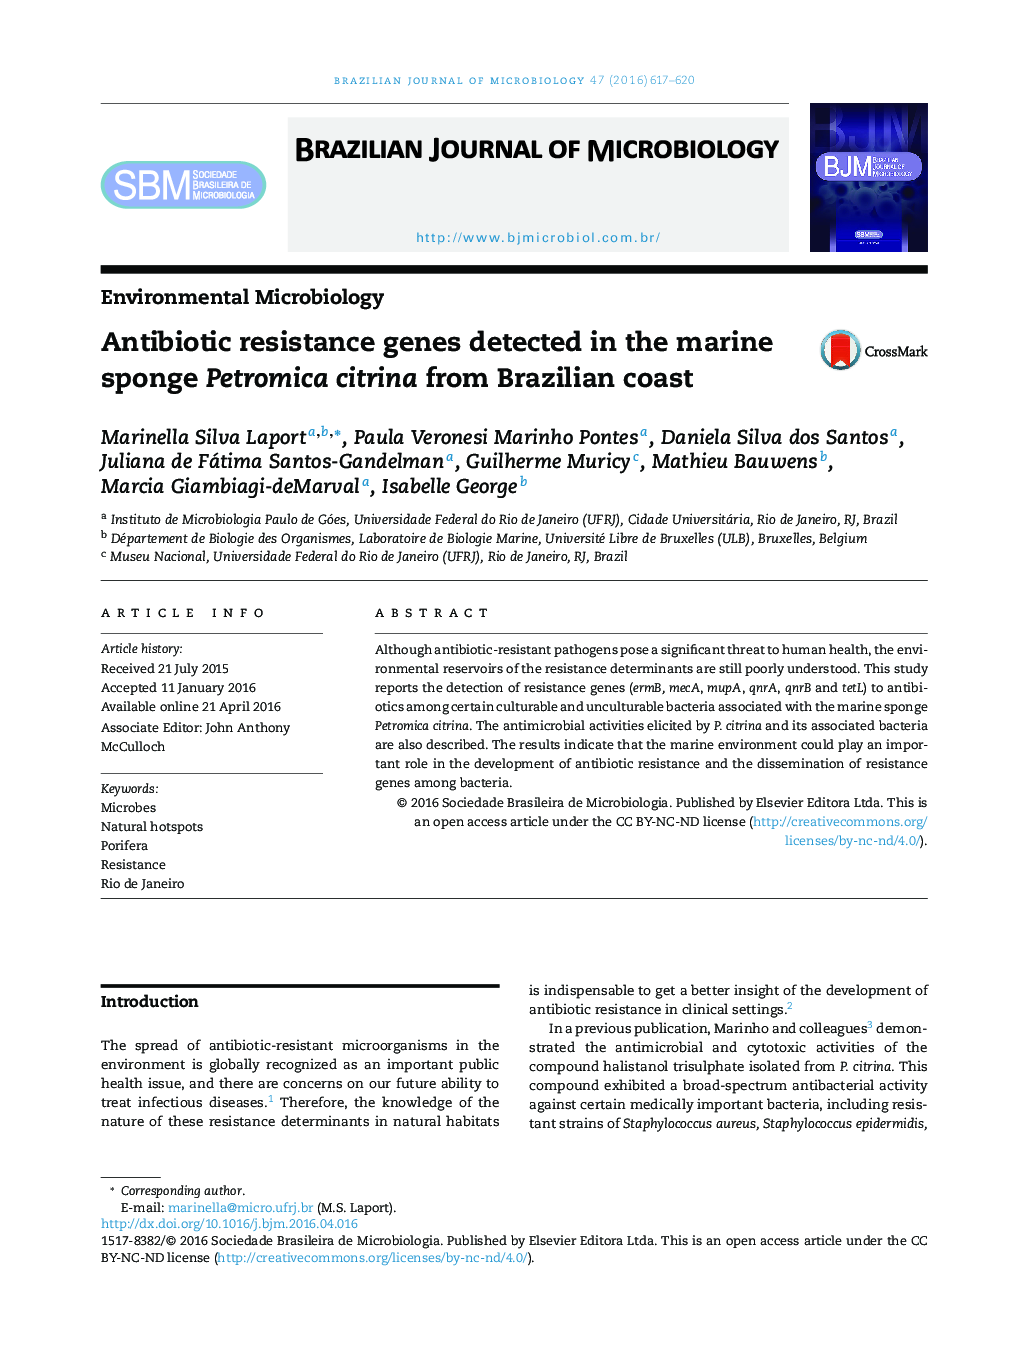 ژن های مقاوم به آنتی بیوتیک تشخیص داده شده در اسفنج دریایی Petromica citrina از ساحل برزیل  